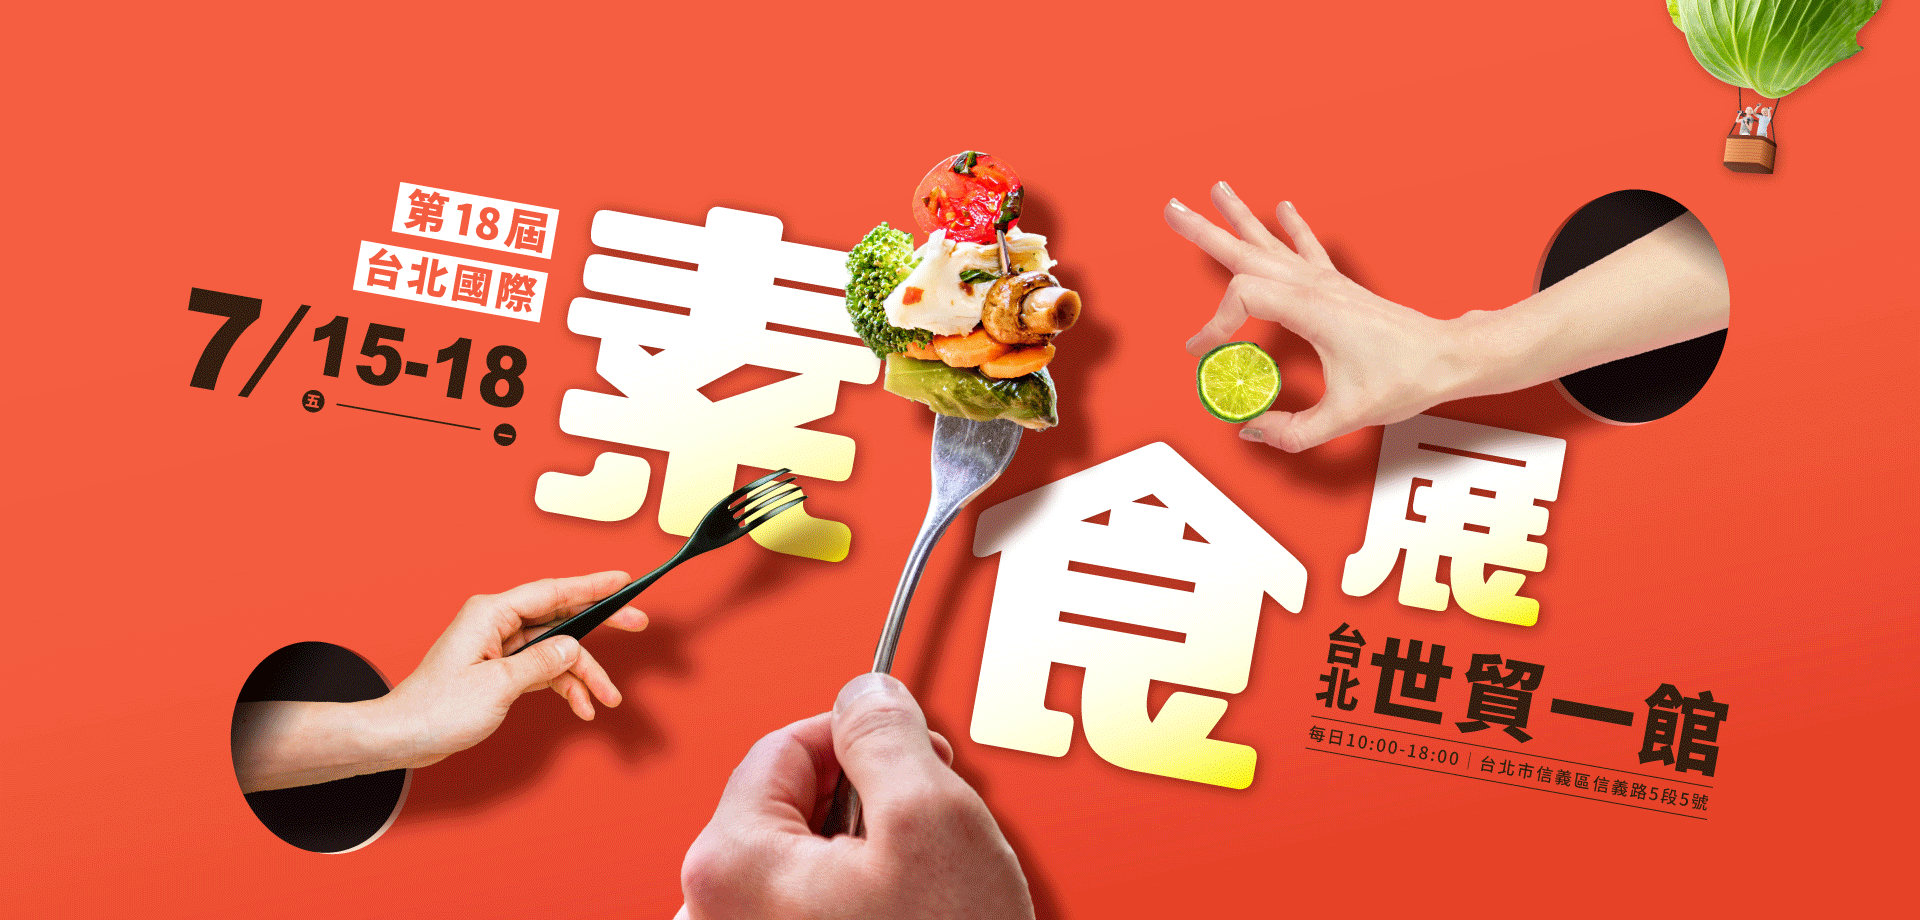 第18屆台北國際素食展